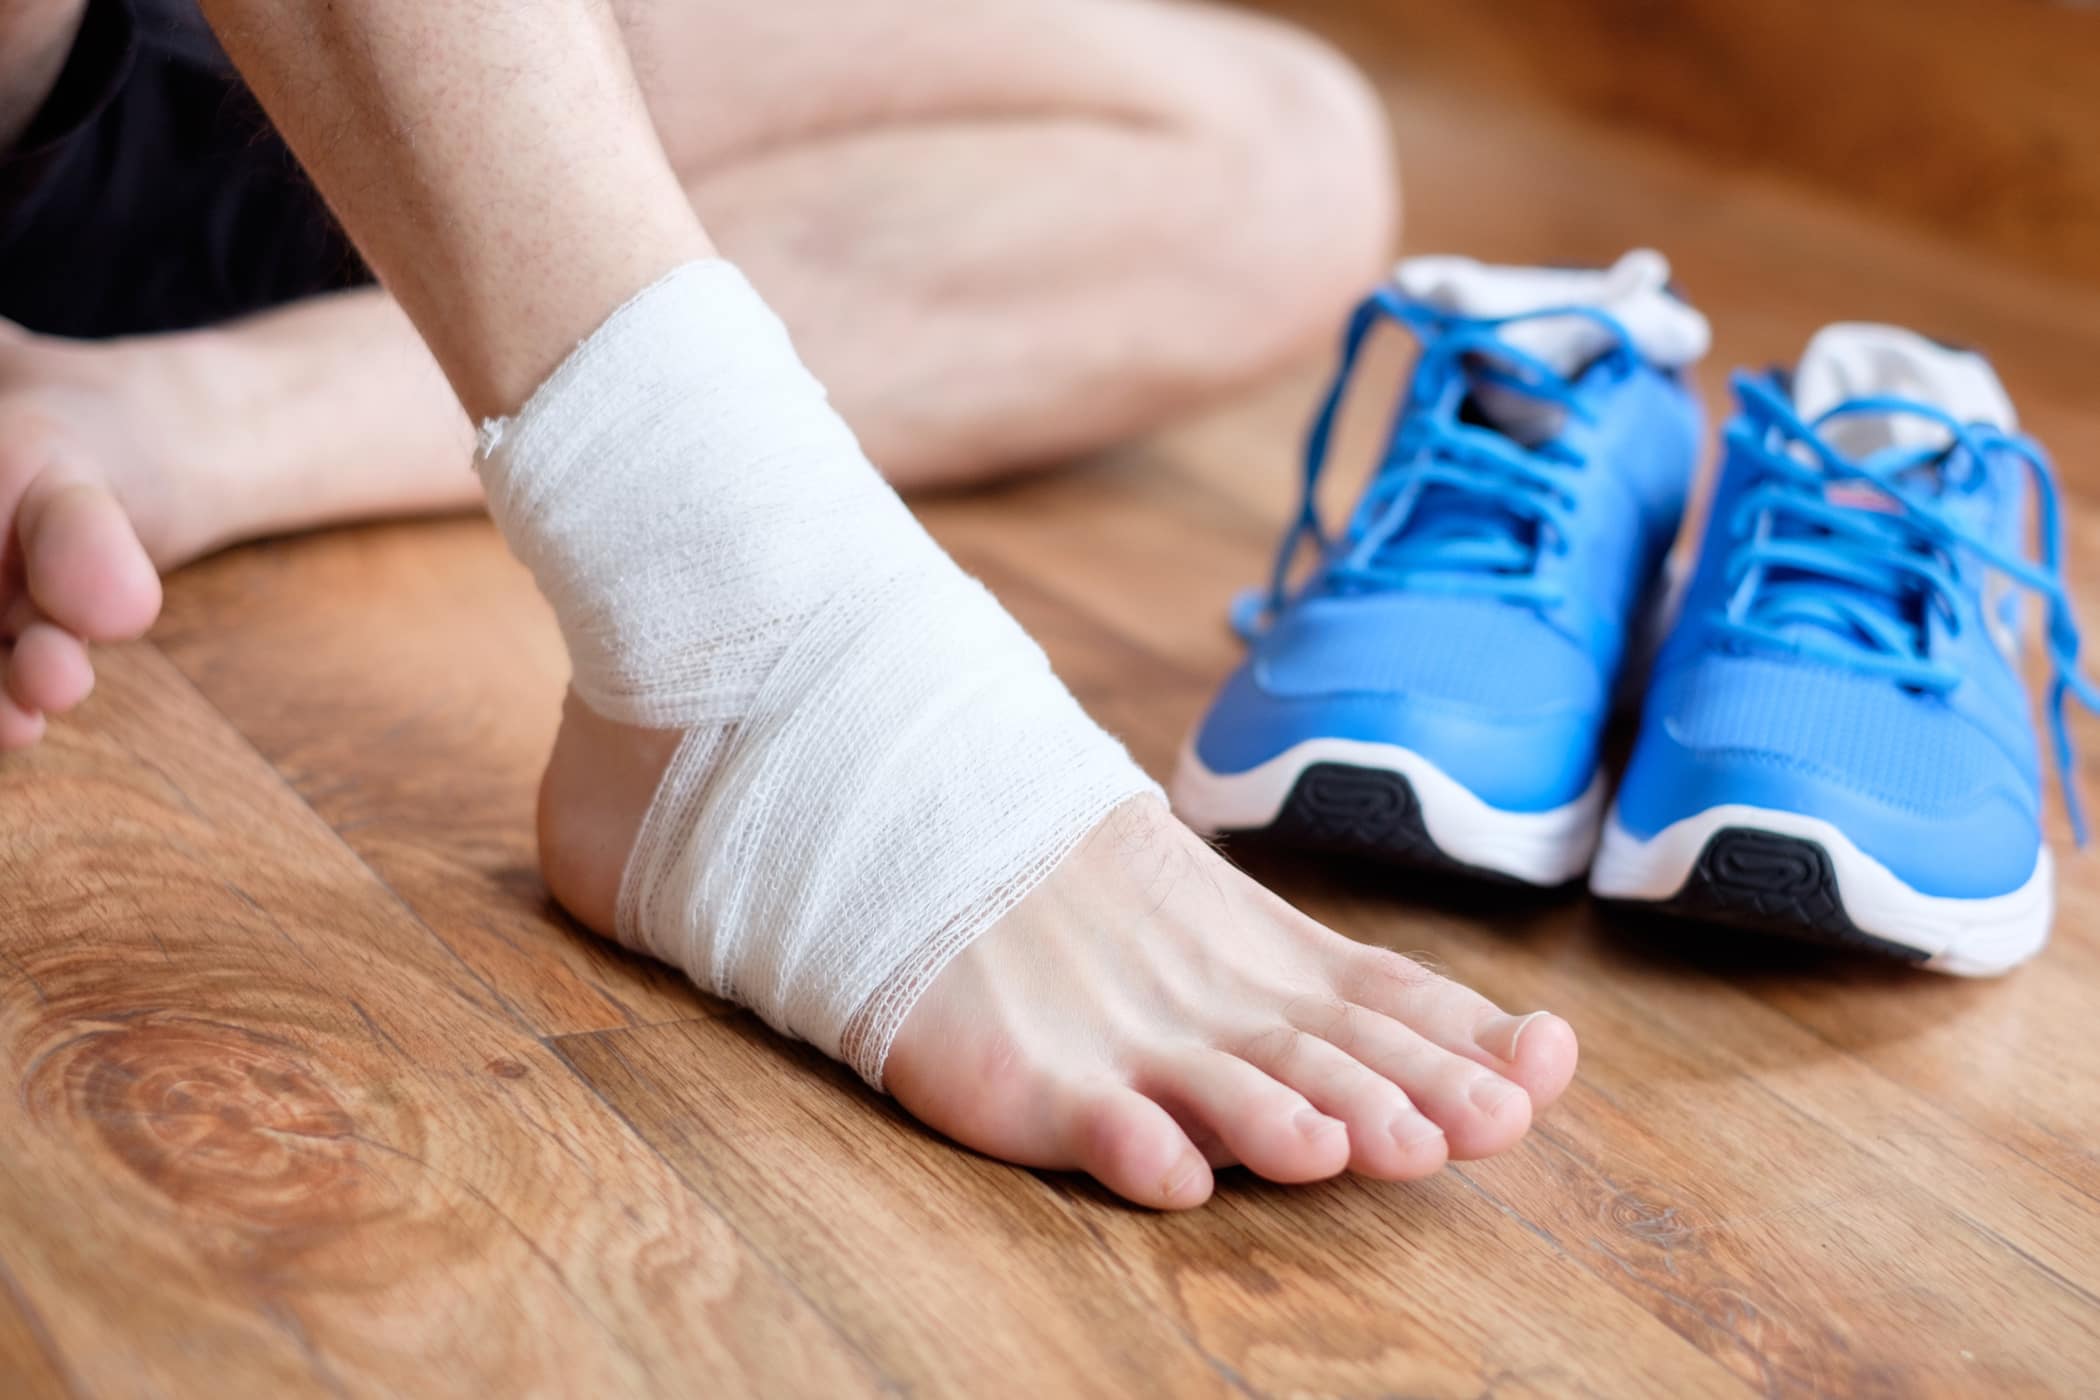 Chú ý đến các biện pháp phòng ngừa lật cổ chân